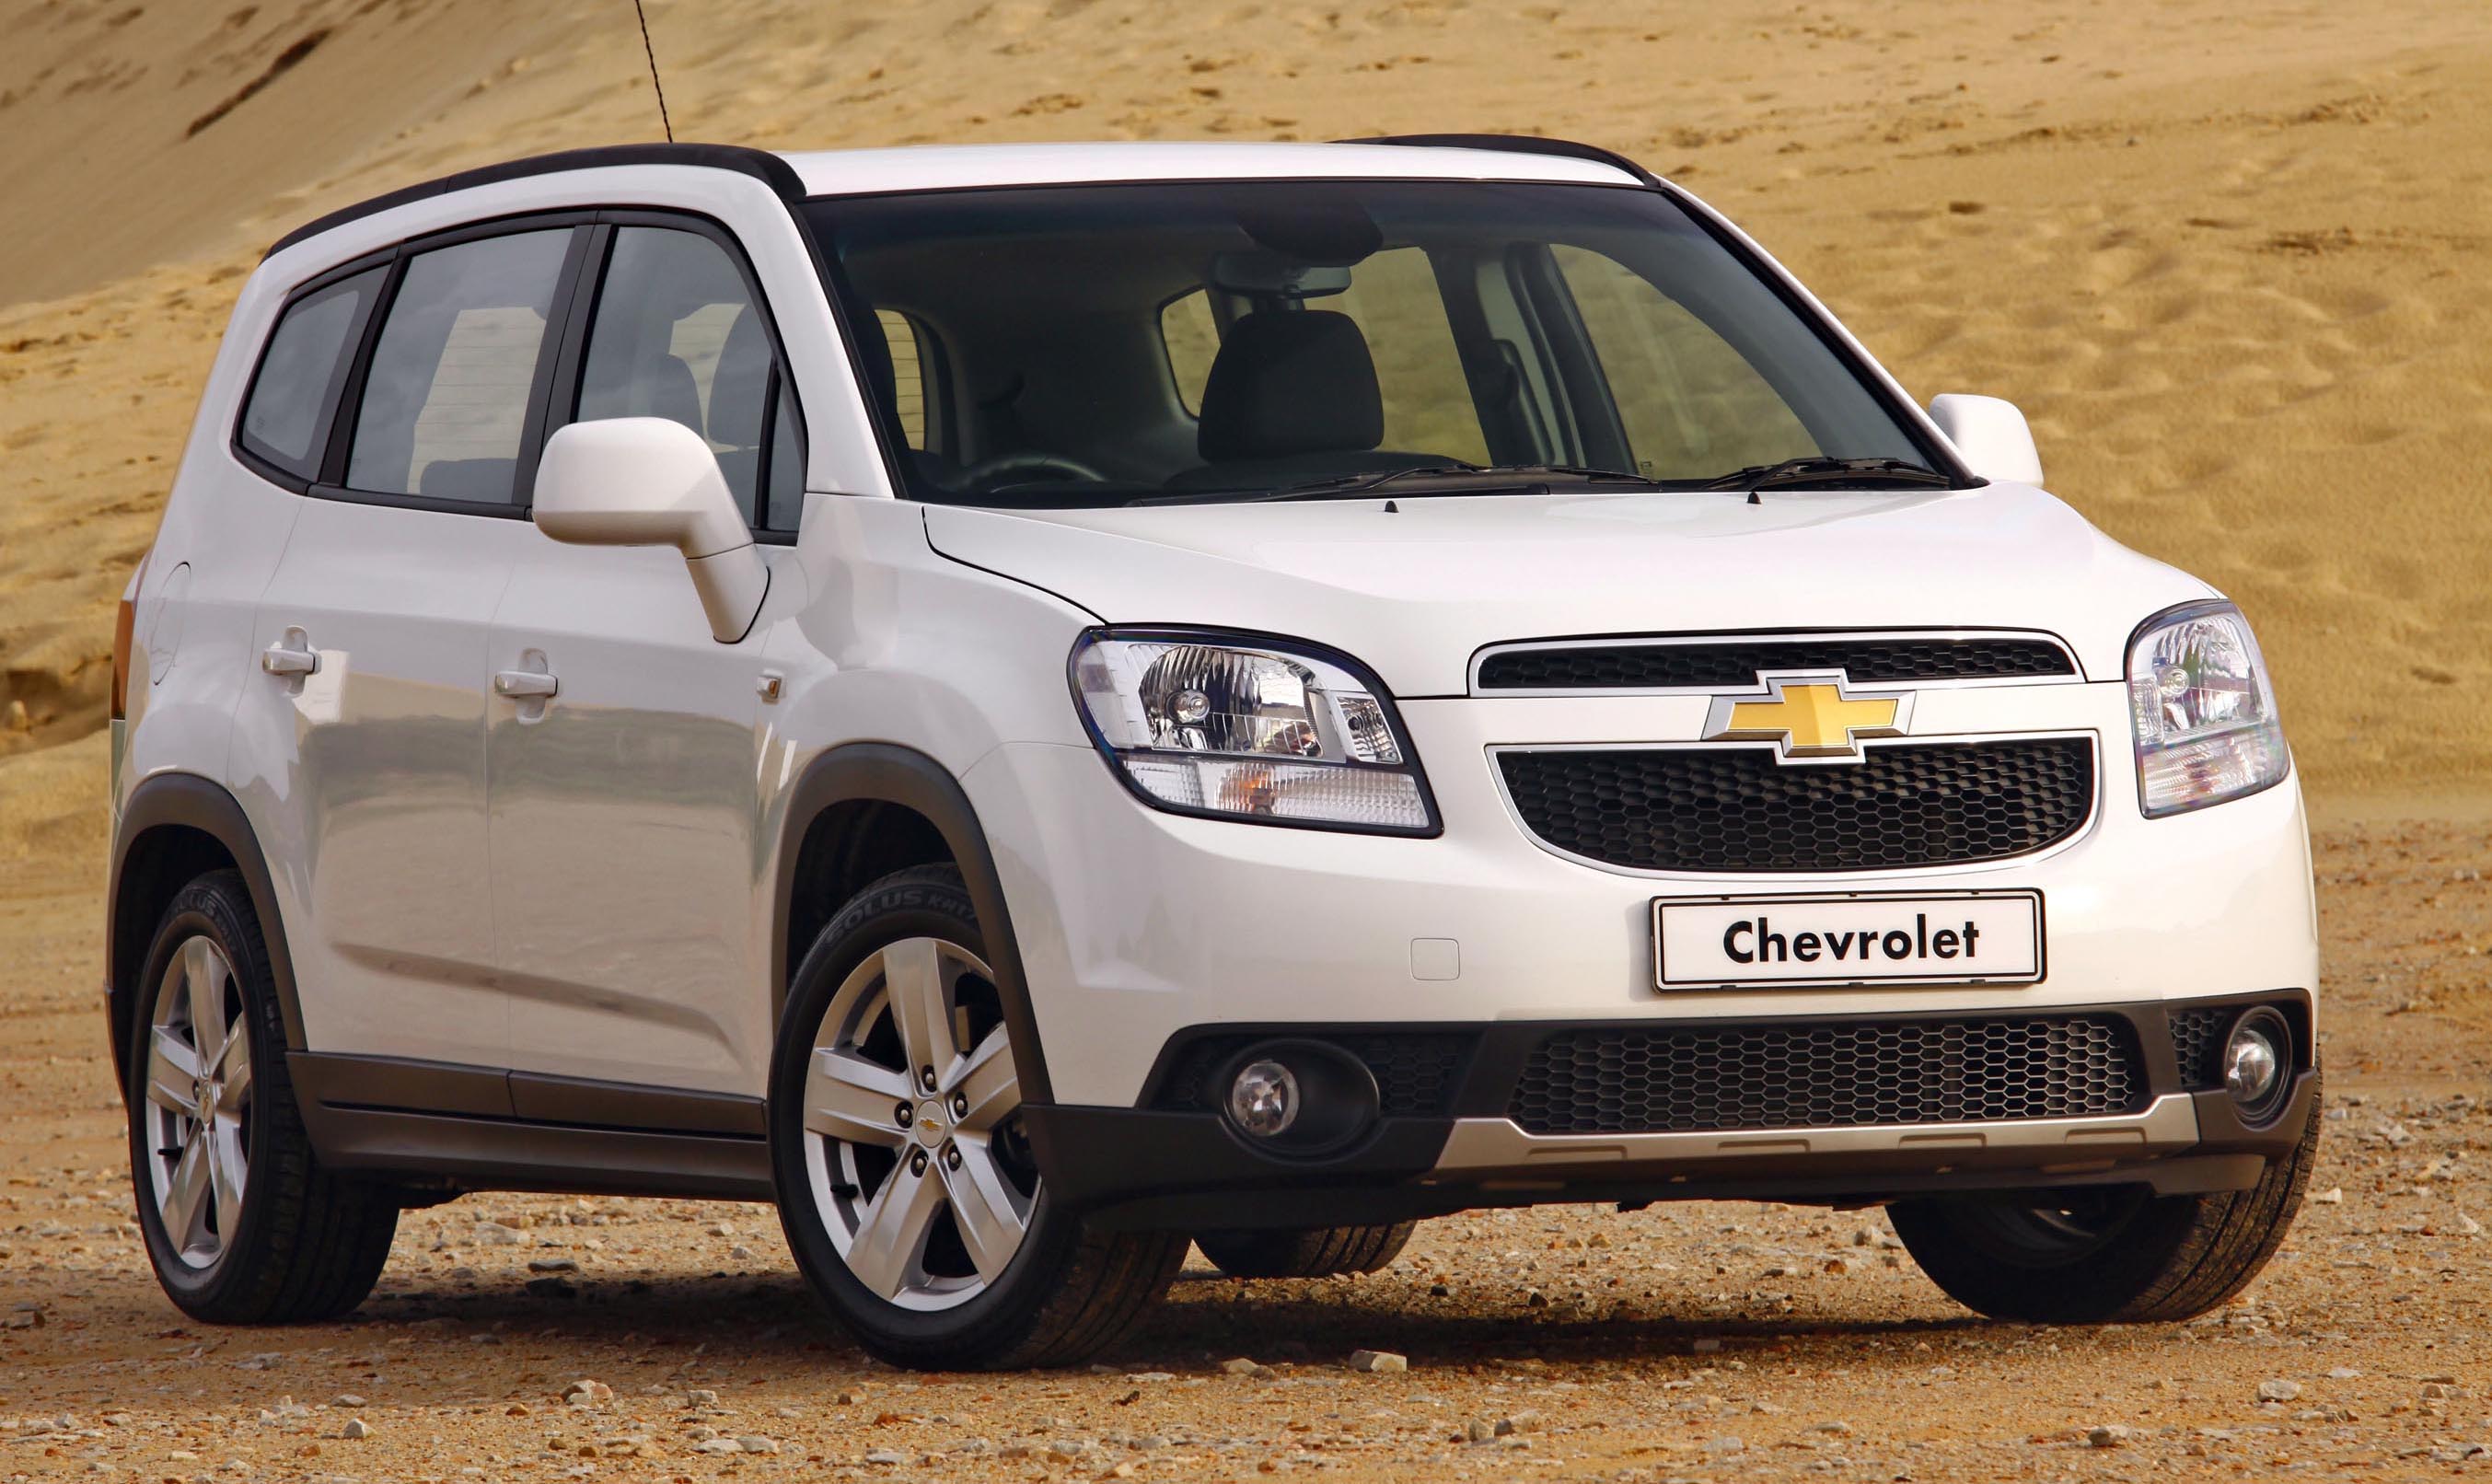 VinFast triệu hồi hơn 7.500 xe Chevrolet để thay túi khí